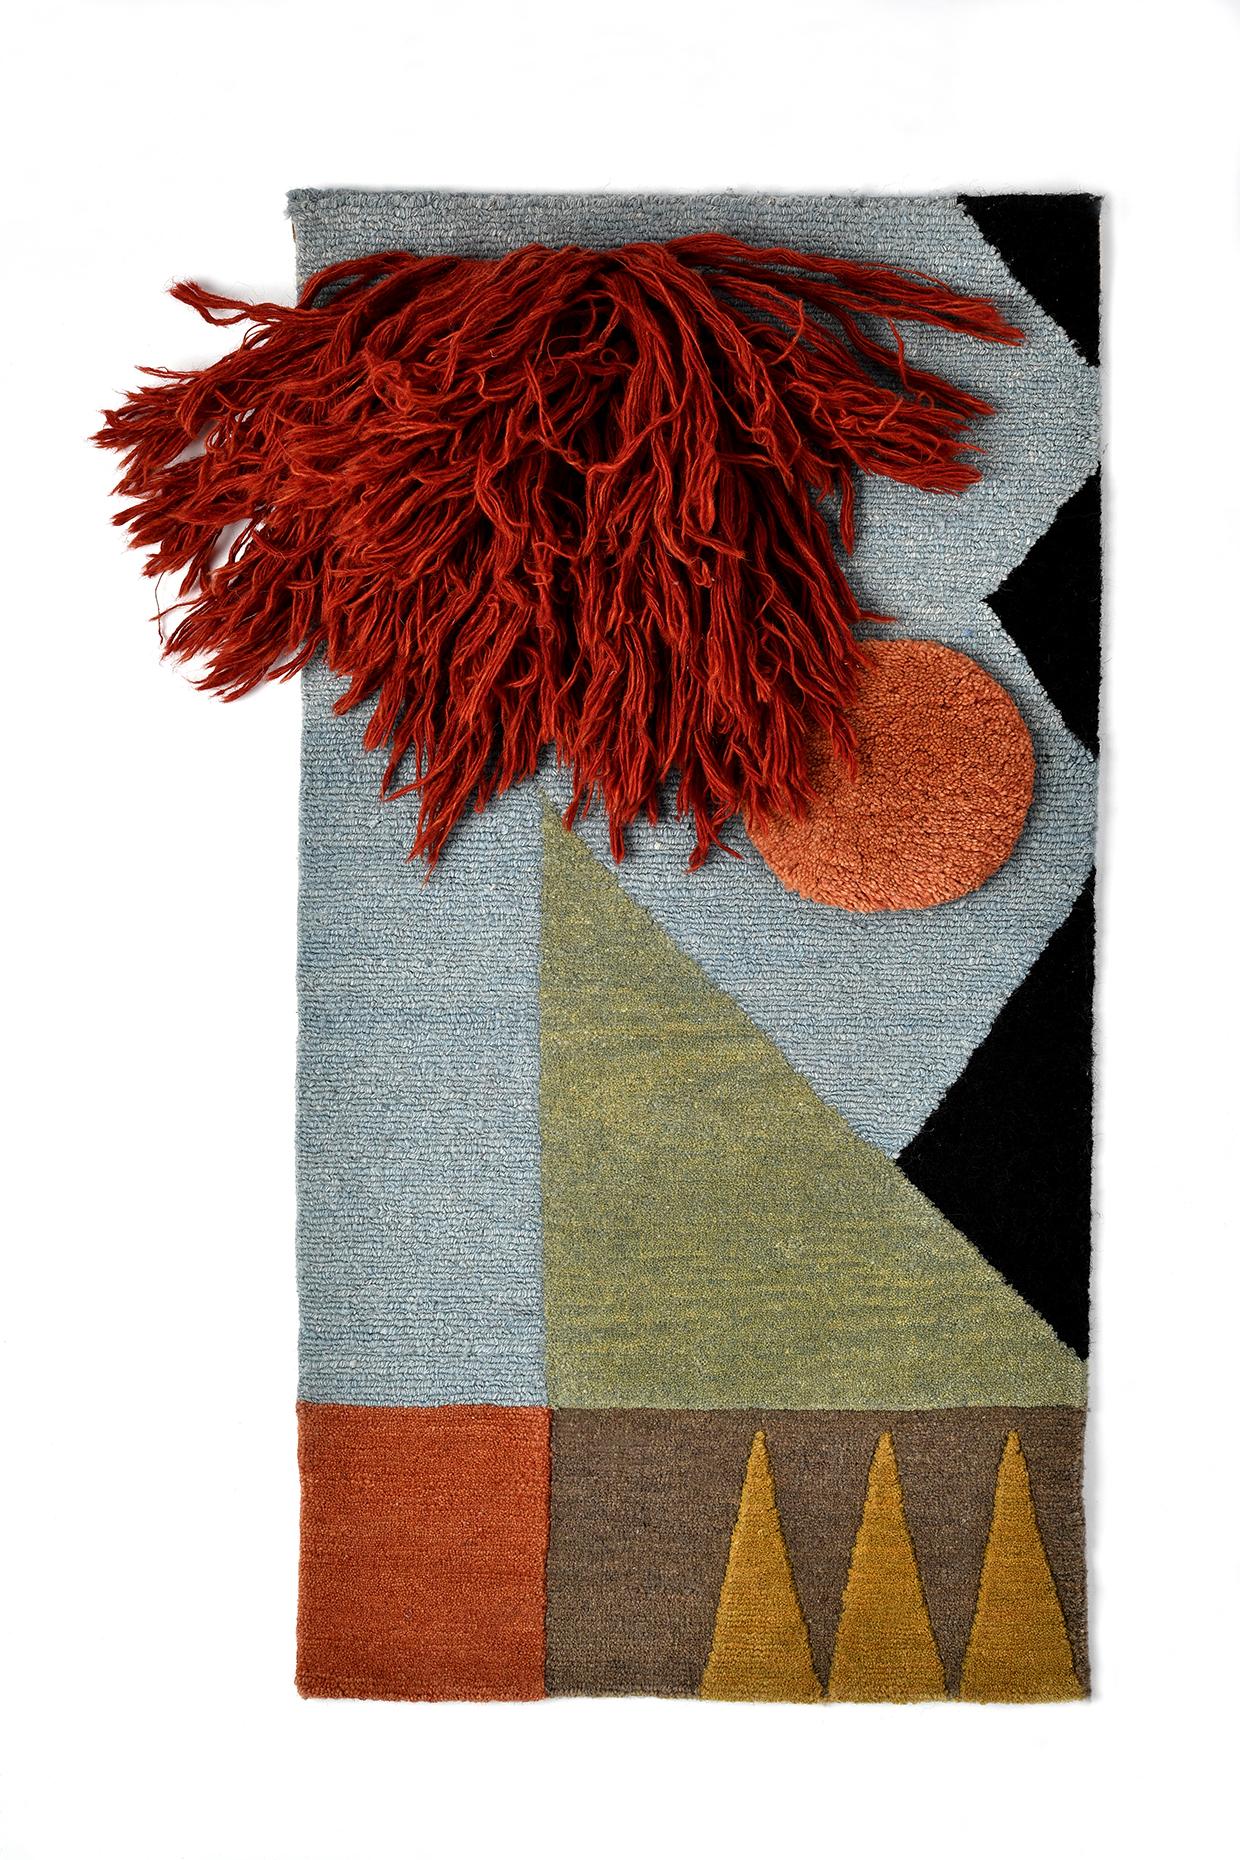 N° 221 Affiche textile nouée à la main par Lyk Carpet
Hommage aux femmes du Bauhaus
Dimensions : L 42 x L 82 cm.
Matériaux : 100% laine des hauts plateaux tibétains, laine vierge peignée et filée à la main, laine naturelle teintée dans la masse, 100